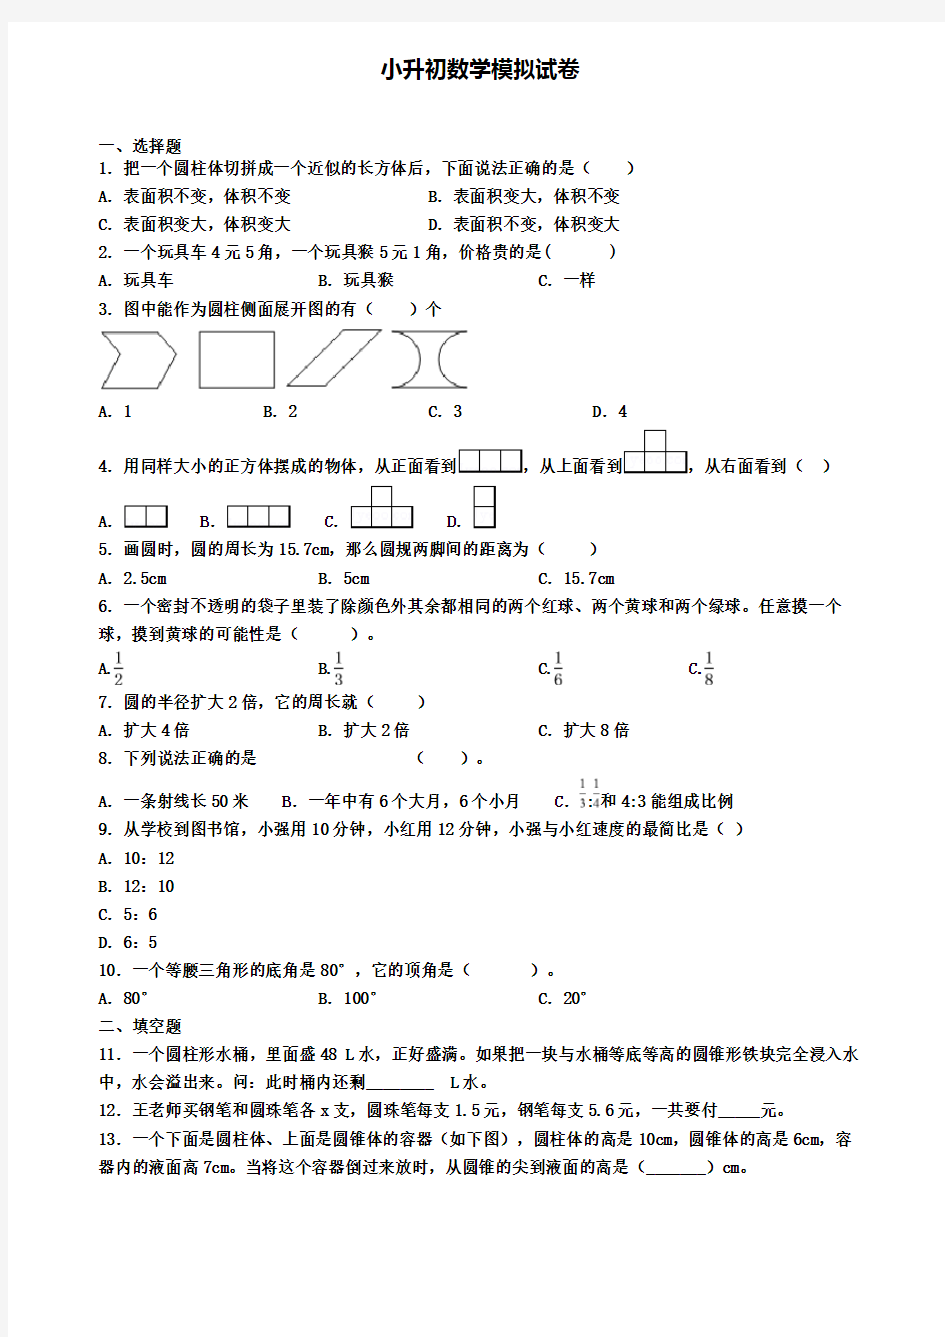 (精选3份合集)2020年湖北省咸宁市数学小升初统考模拟试题